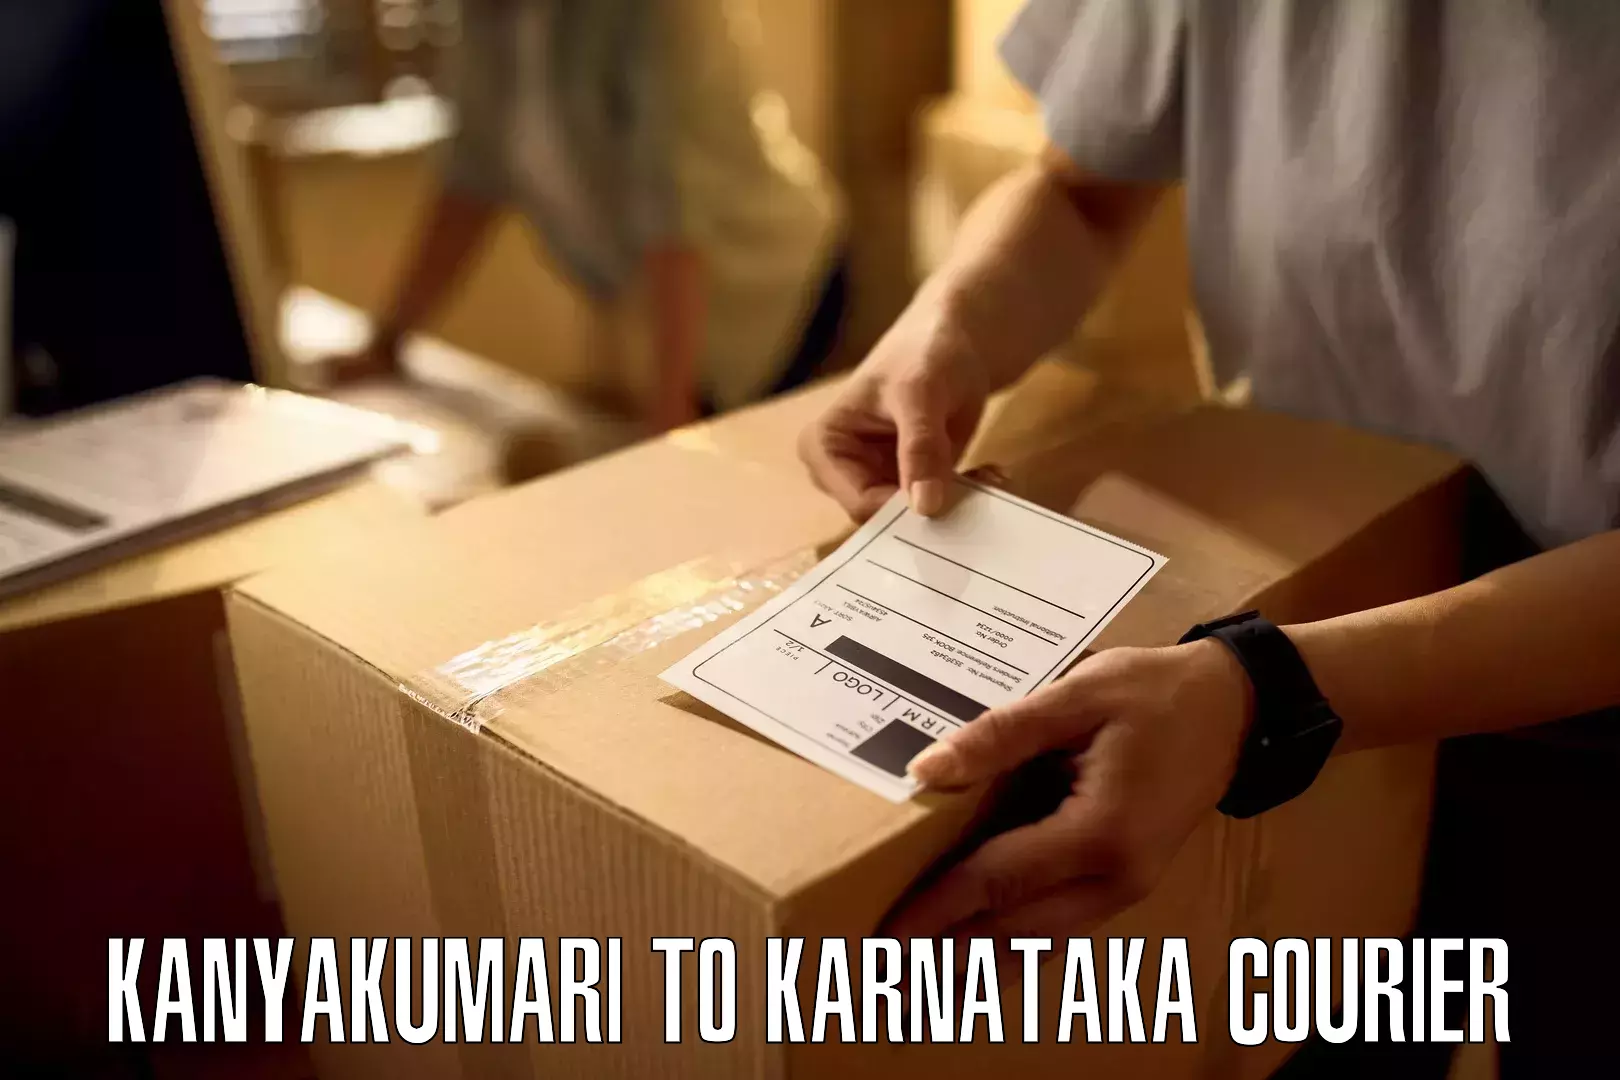 High-speed delivery Kanyakumari to Karnataka